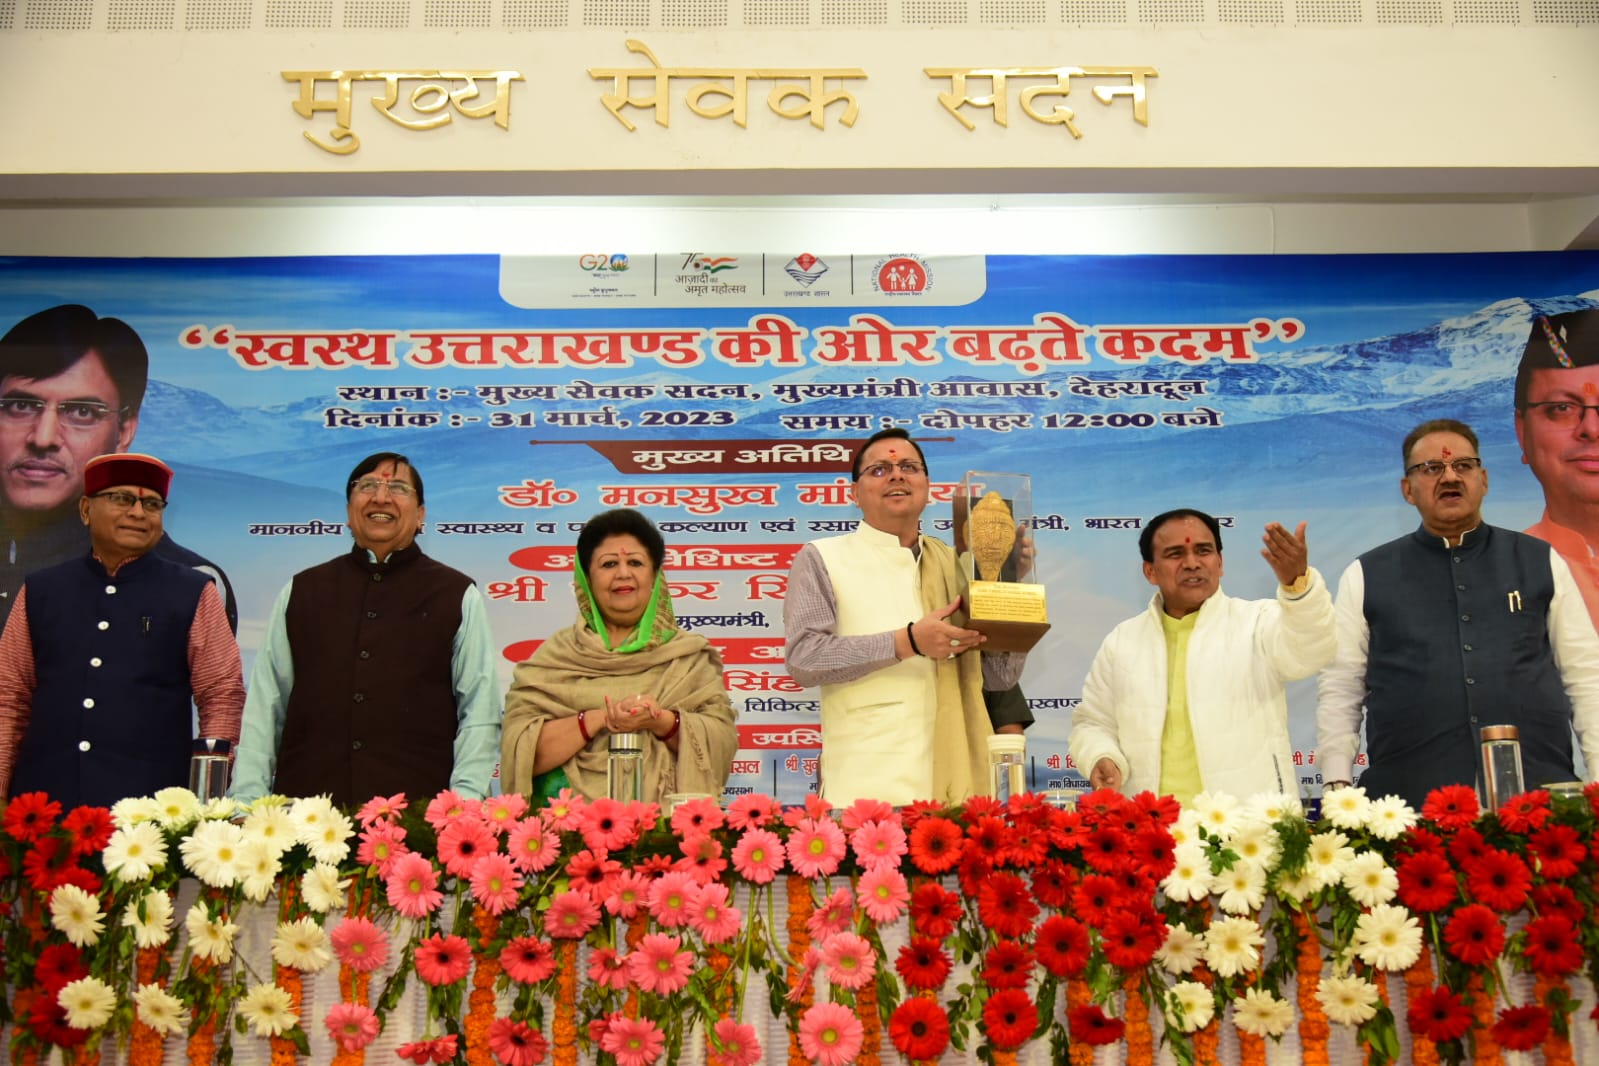 उत्तराखंड प्रदेश में स्वास्थ्य सुविधाओं के लिए 182 करोड़ की चार परियोजनाओं का किया गया शिलान्यास,,,।